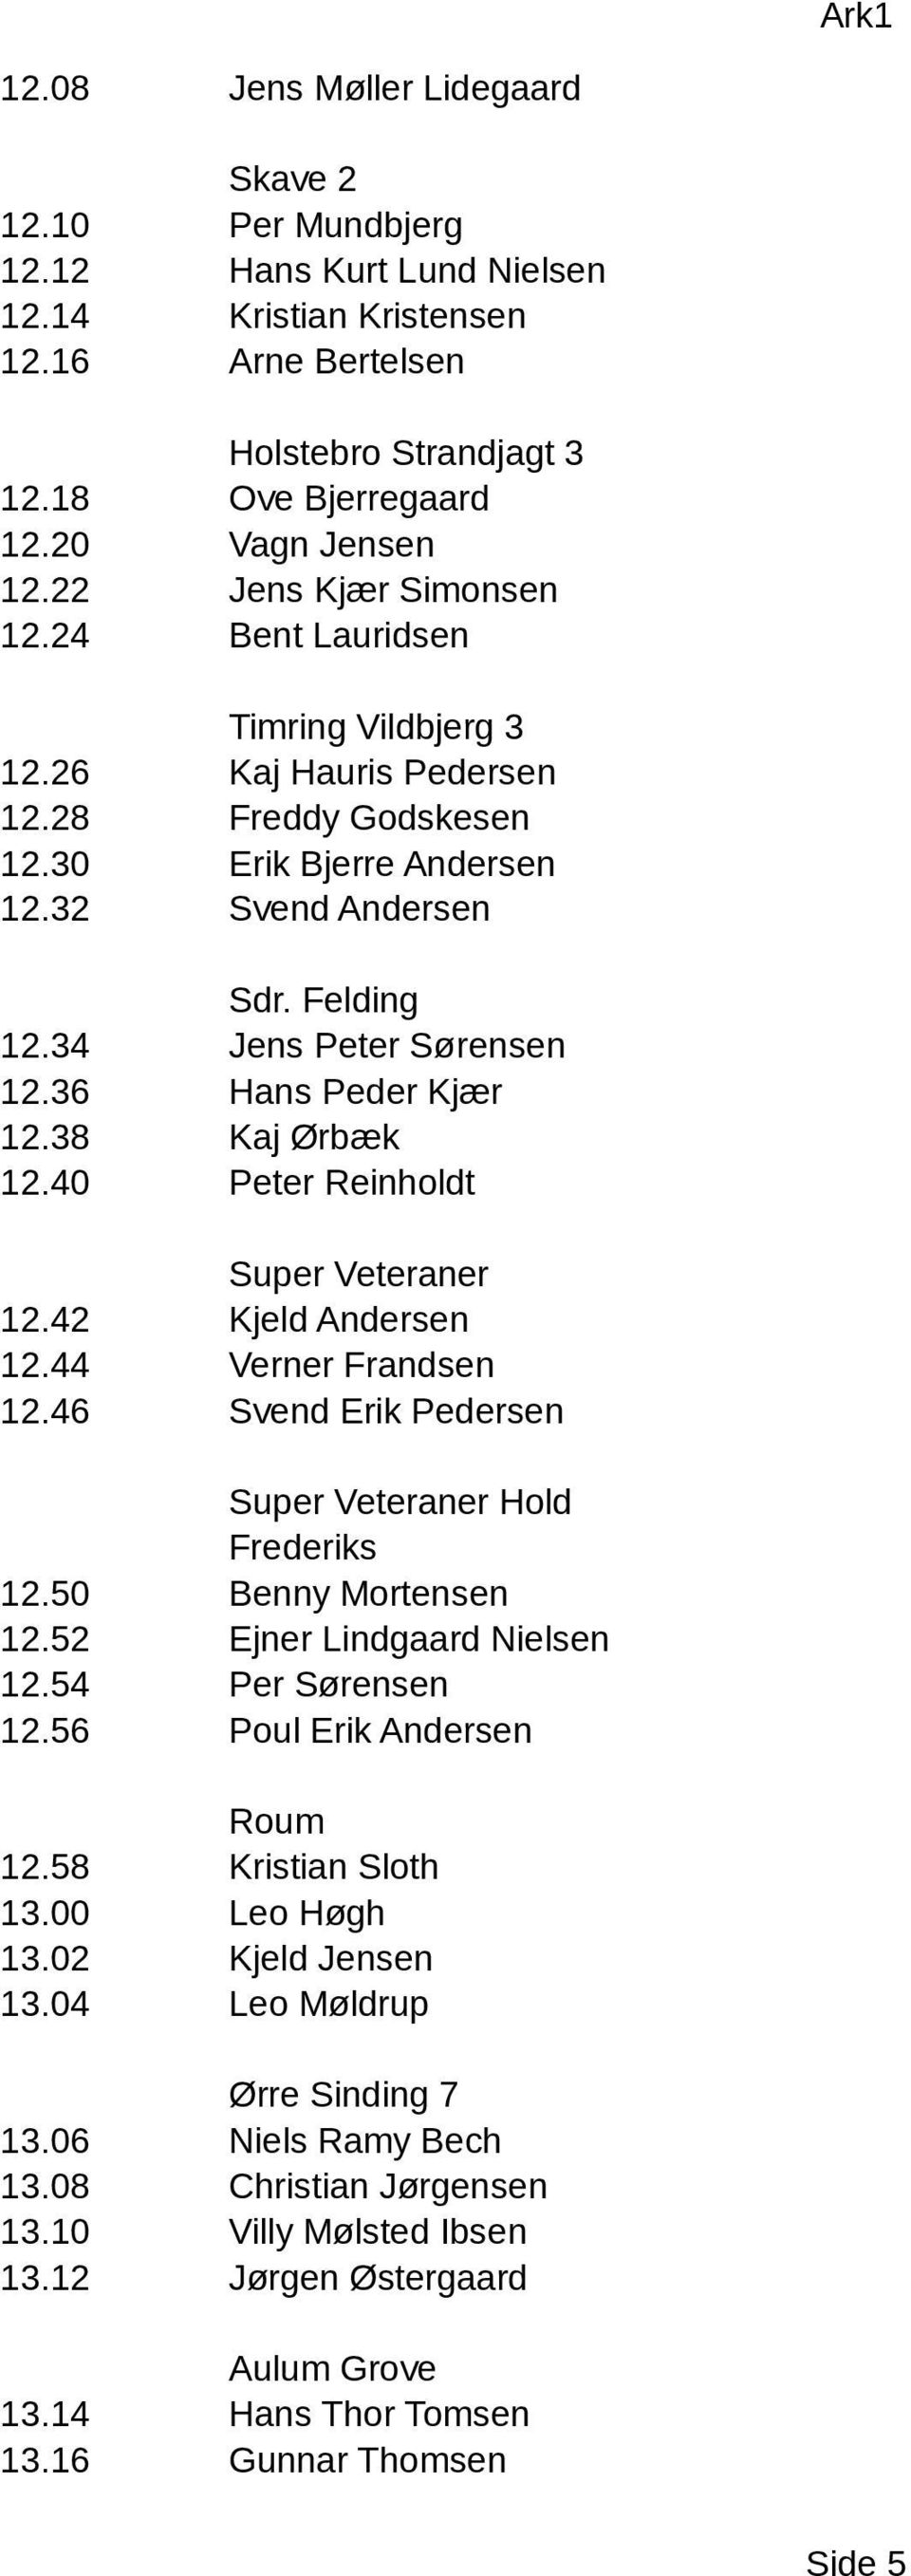 34 Jens Peter Sørensen 12.36 Hans Peder Kjær 12.38 Kaj Ørbæk 12.40 Peter Reinholdt Super Veteraner 12.42 Kjeld Andersen 12.44 Verner Frandsen 12.